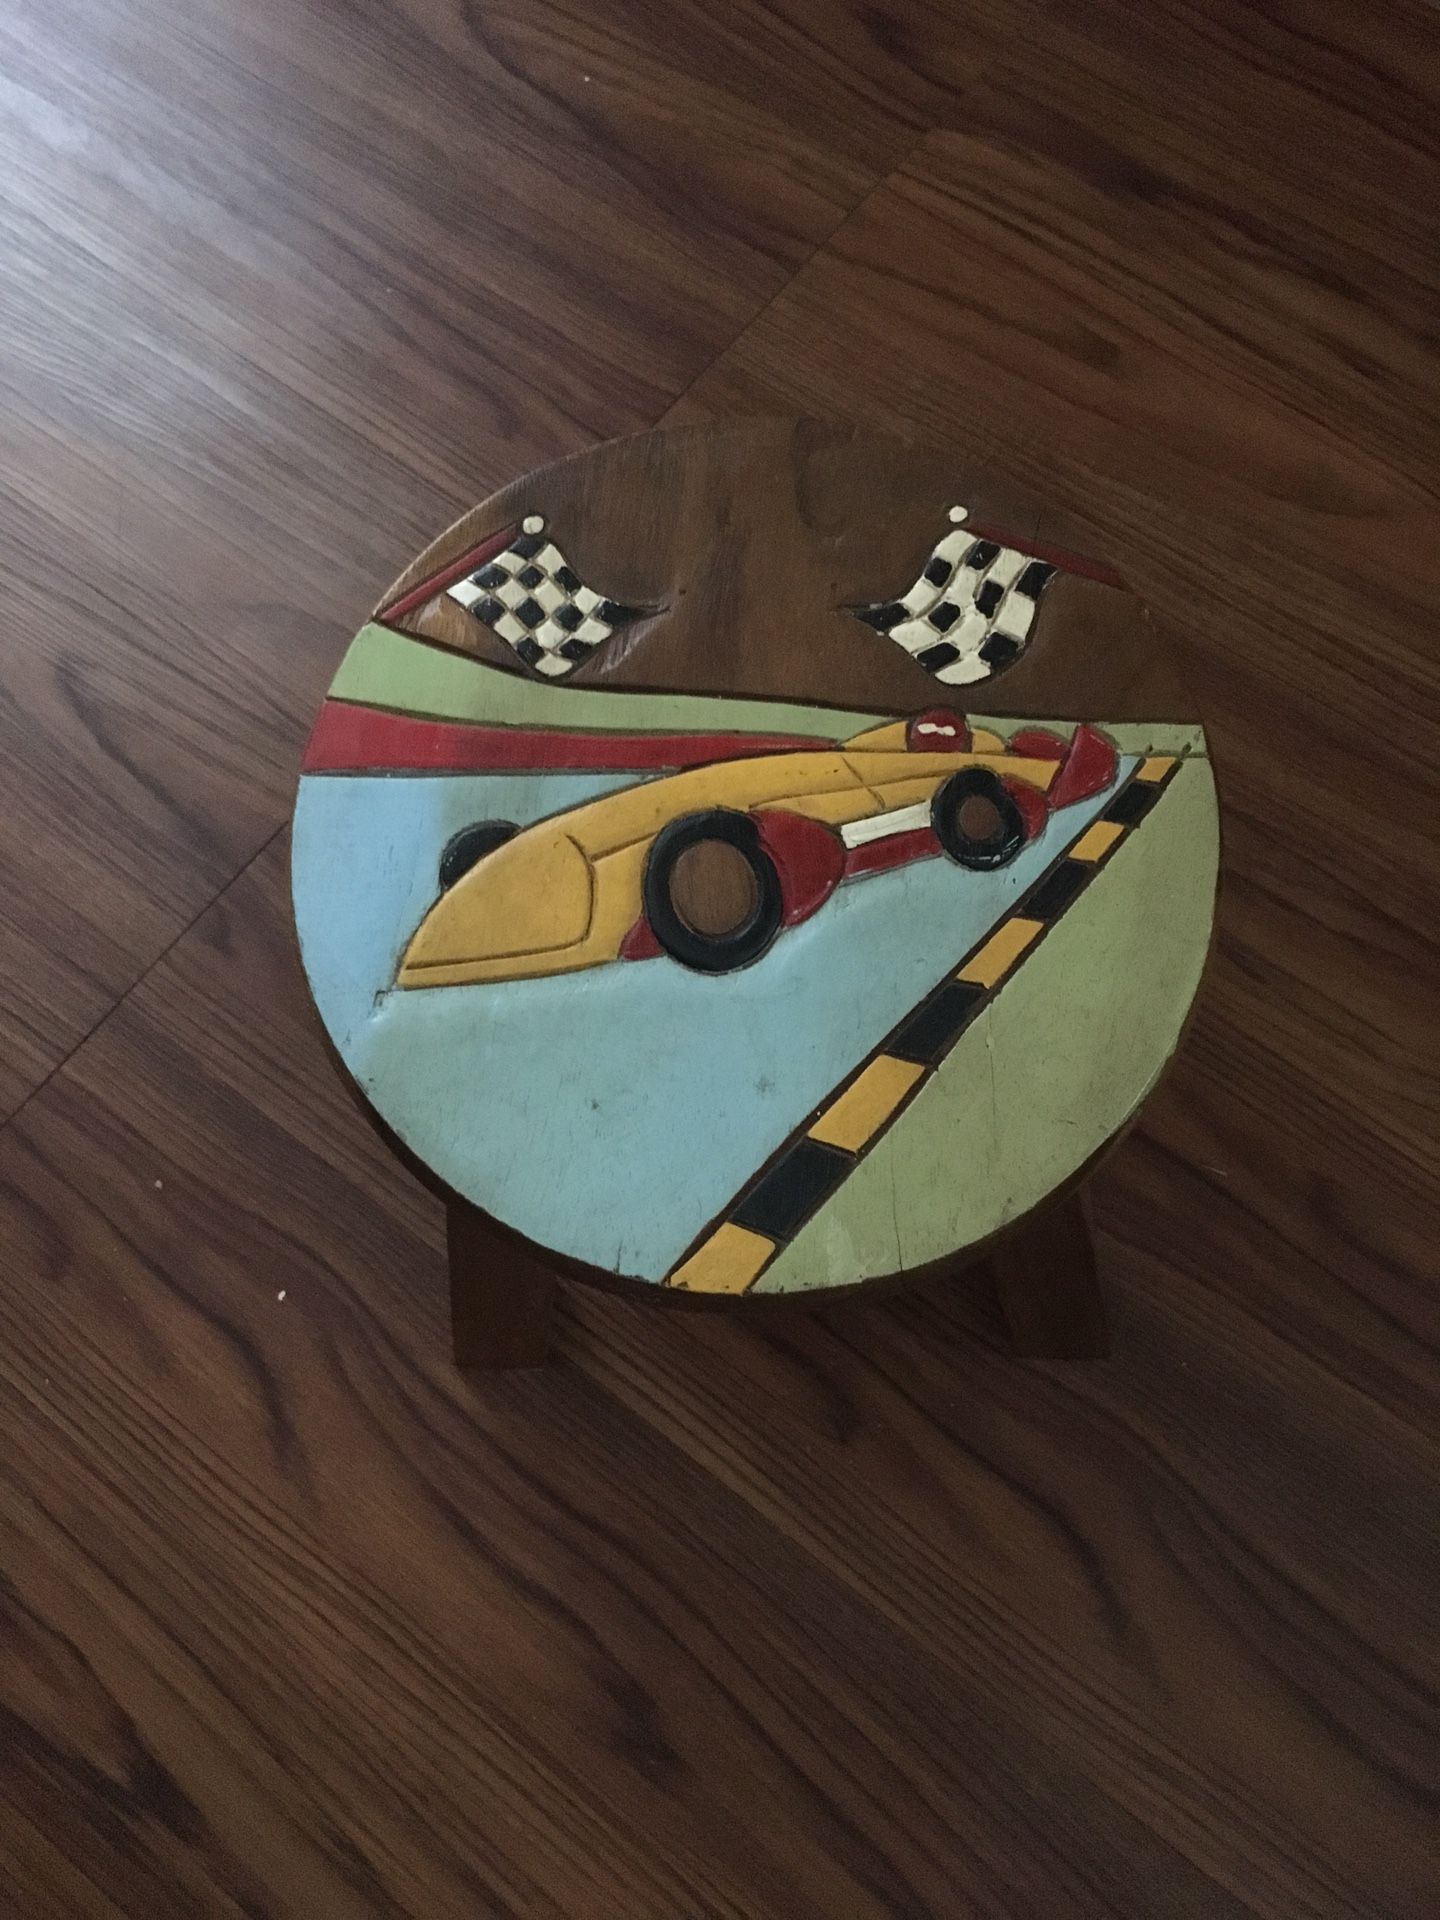 Race car stool